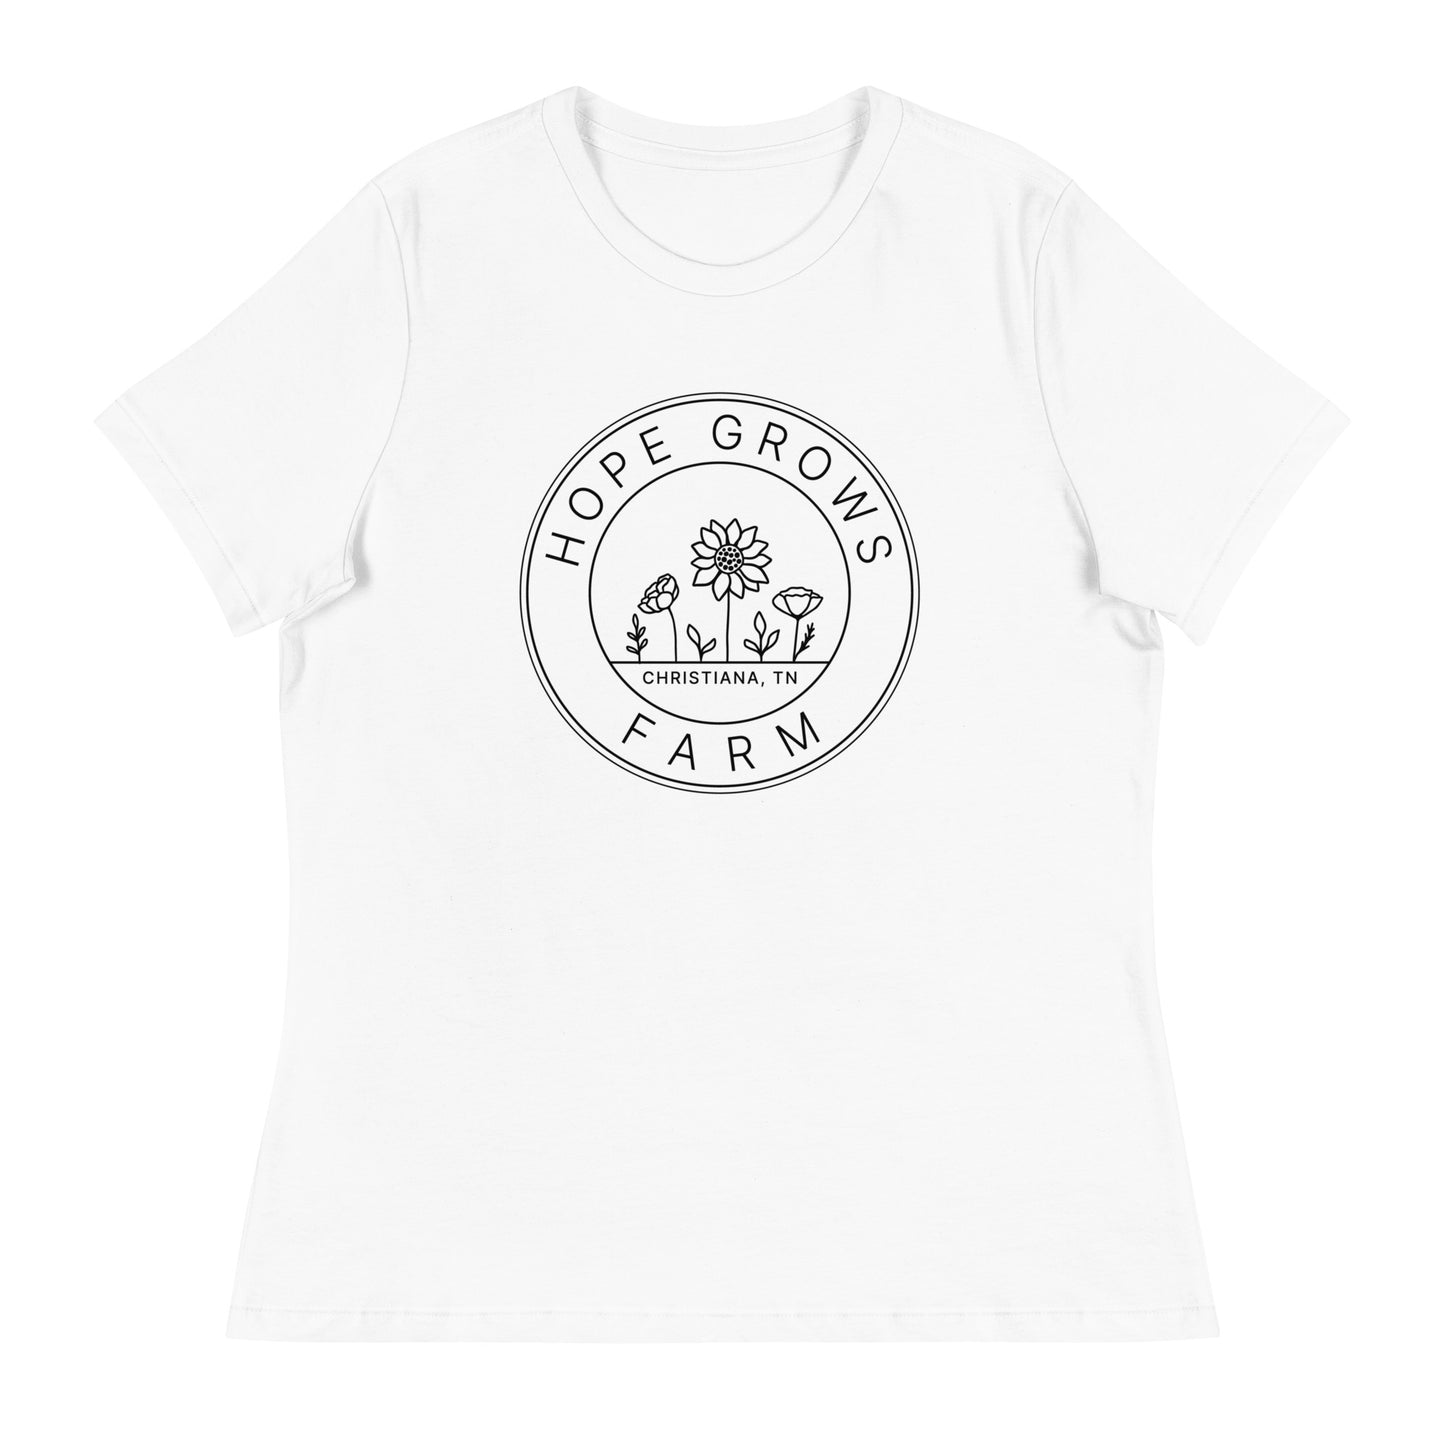 Women's Relaxed Logo T-Shirt